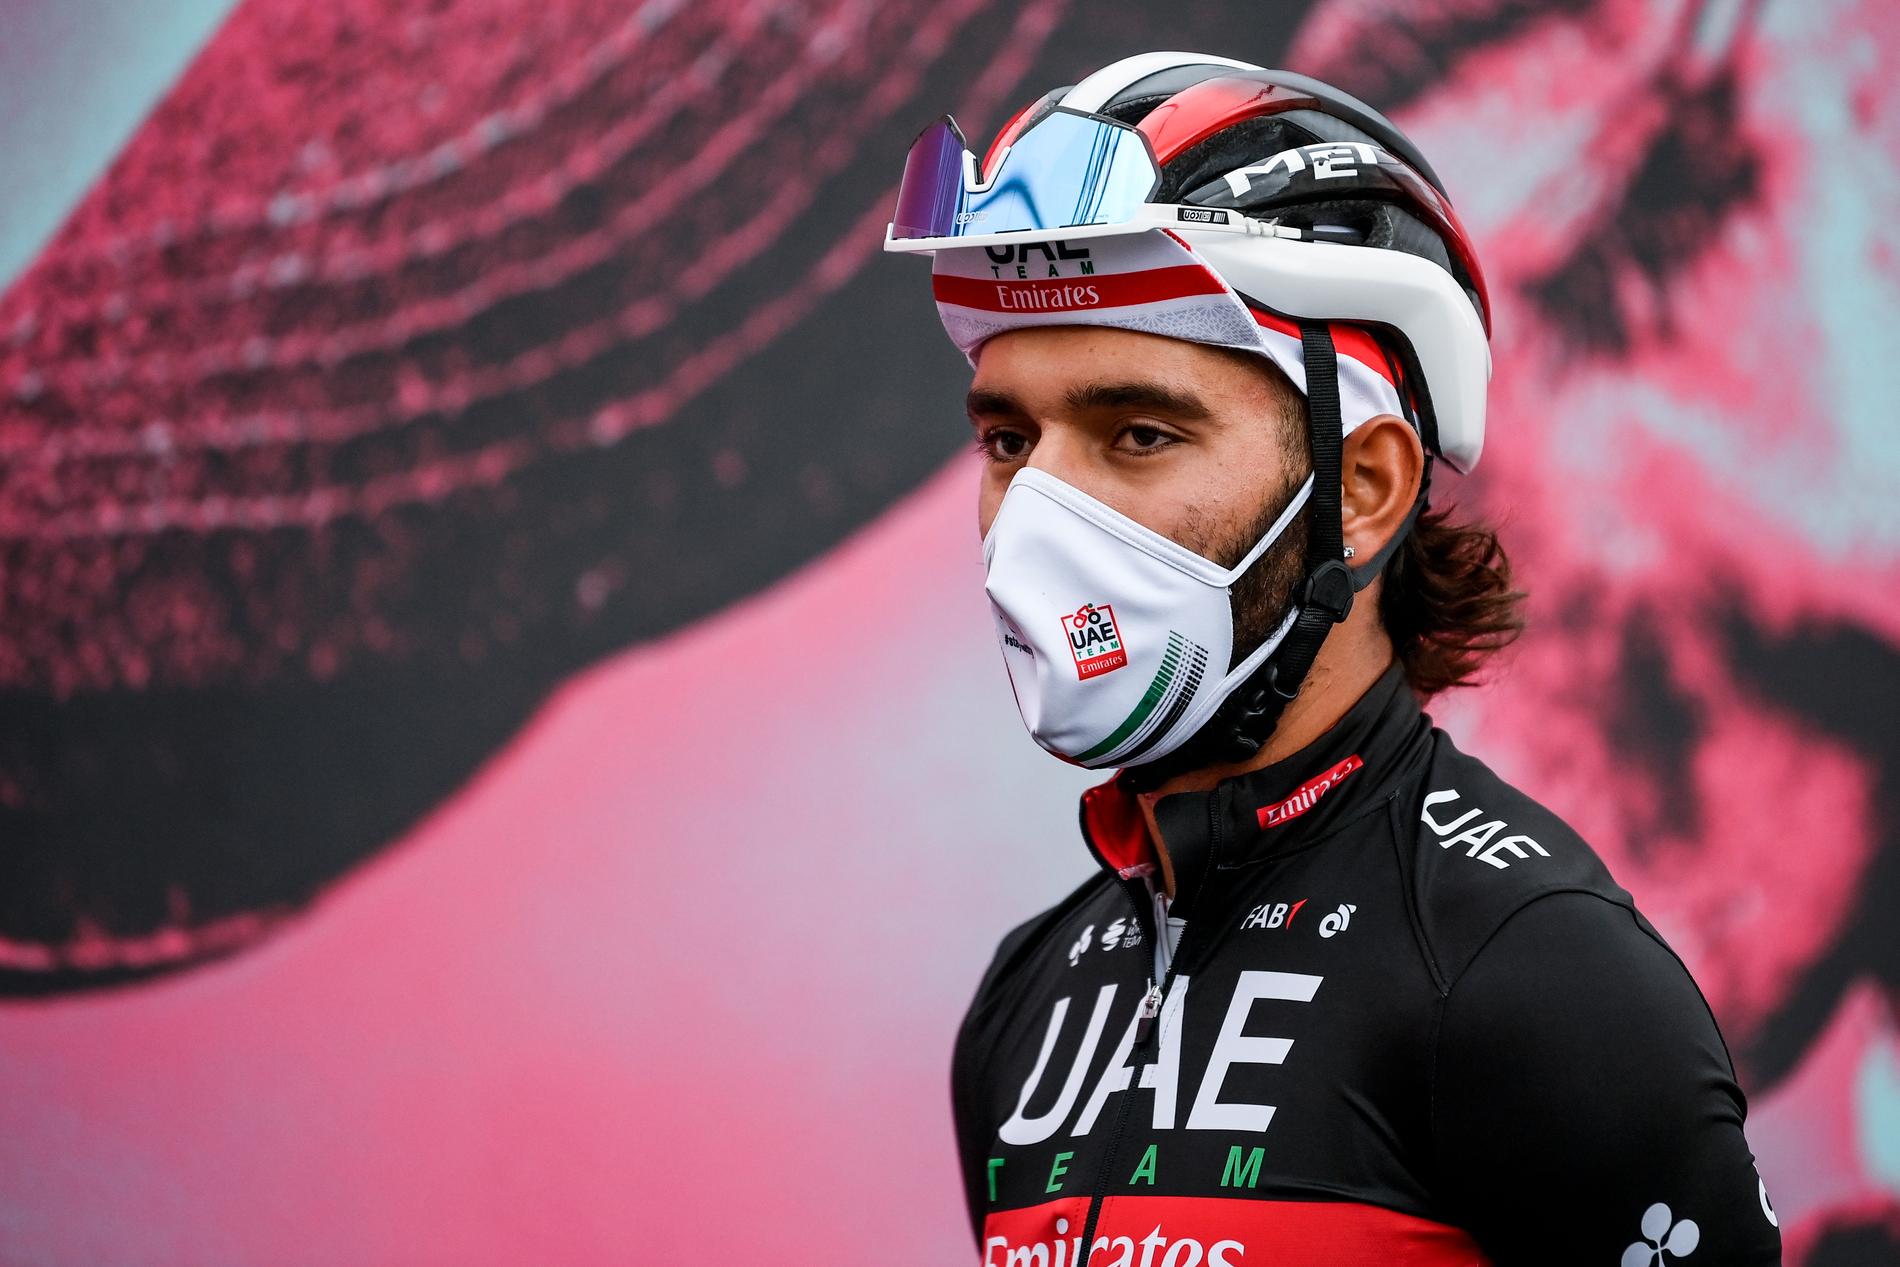 Fernando Gaviria inför torsdagens 13:e etapp i Giro d'Italia.